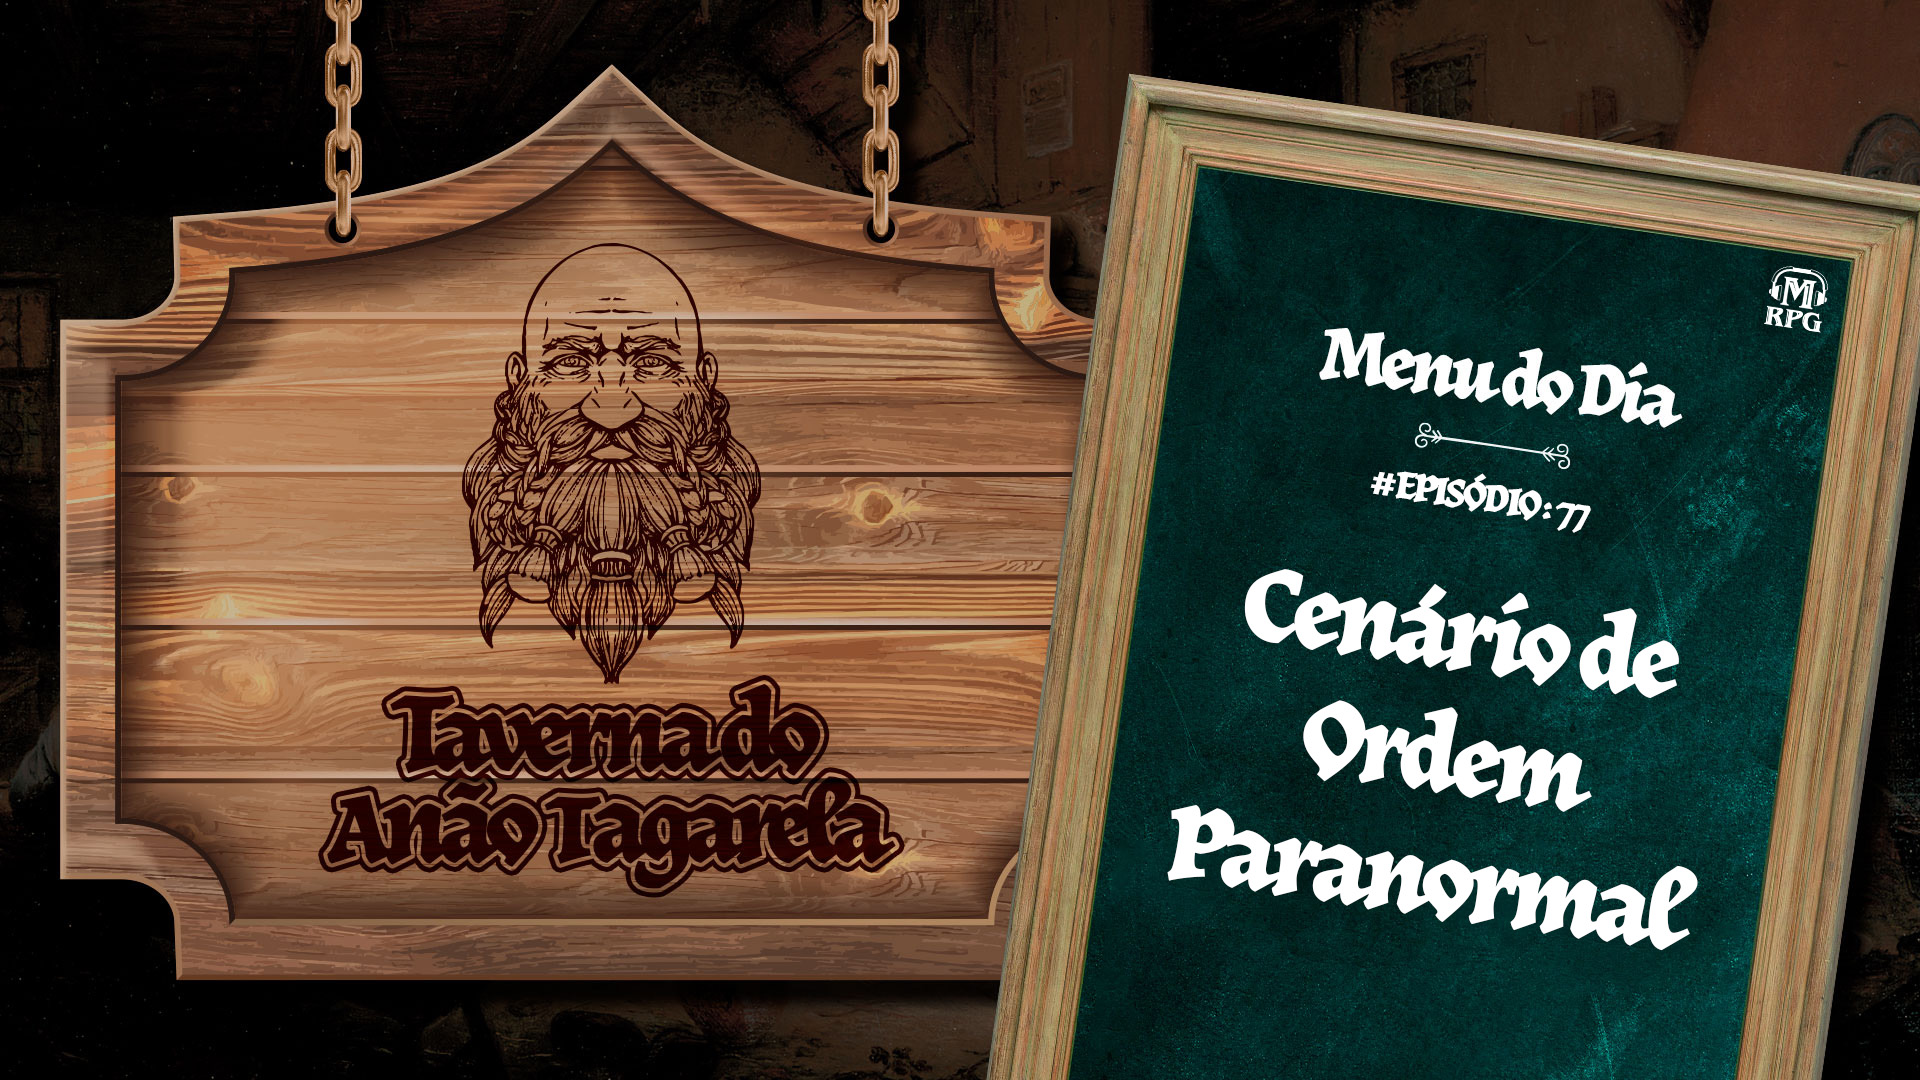 Cenário de Ordem Paranormal – Taverna do Anão Tagarela #77